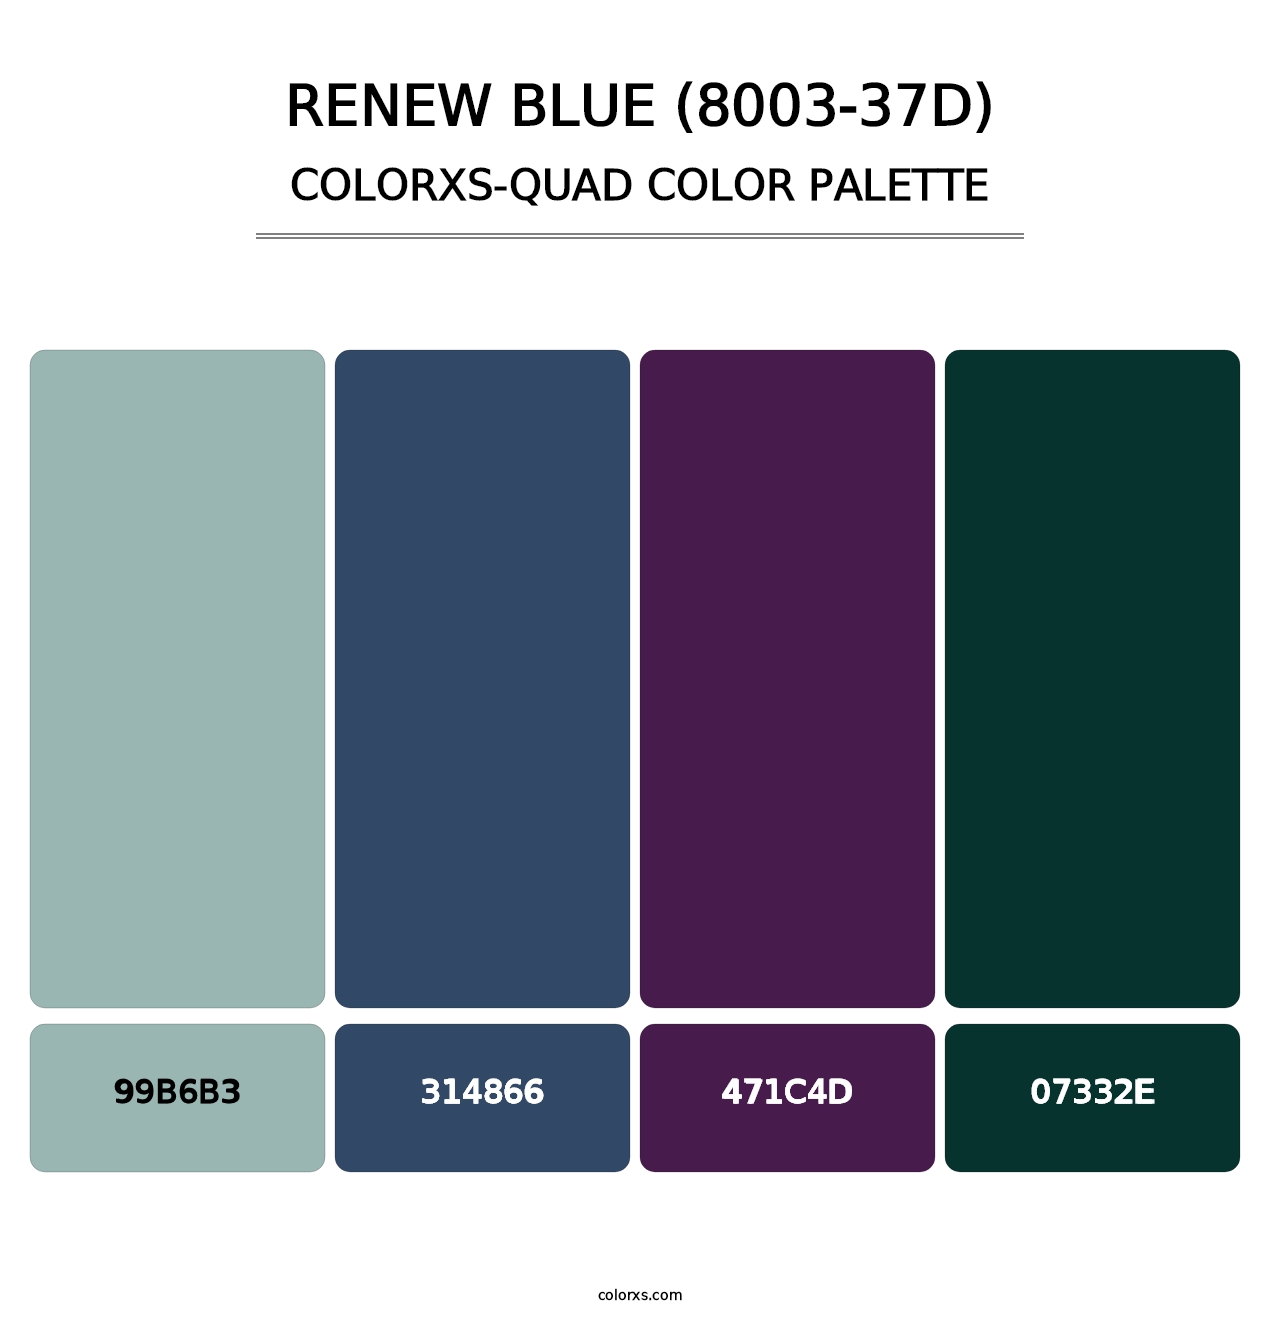 Renew Blue (8003-37D) - Colorxs Quad Palette